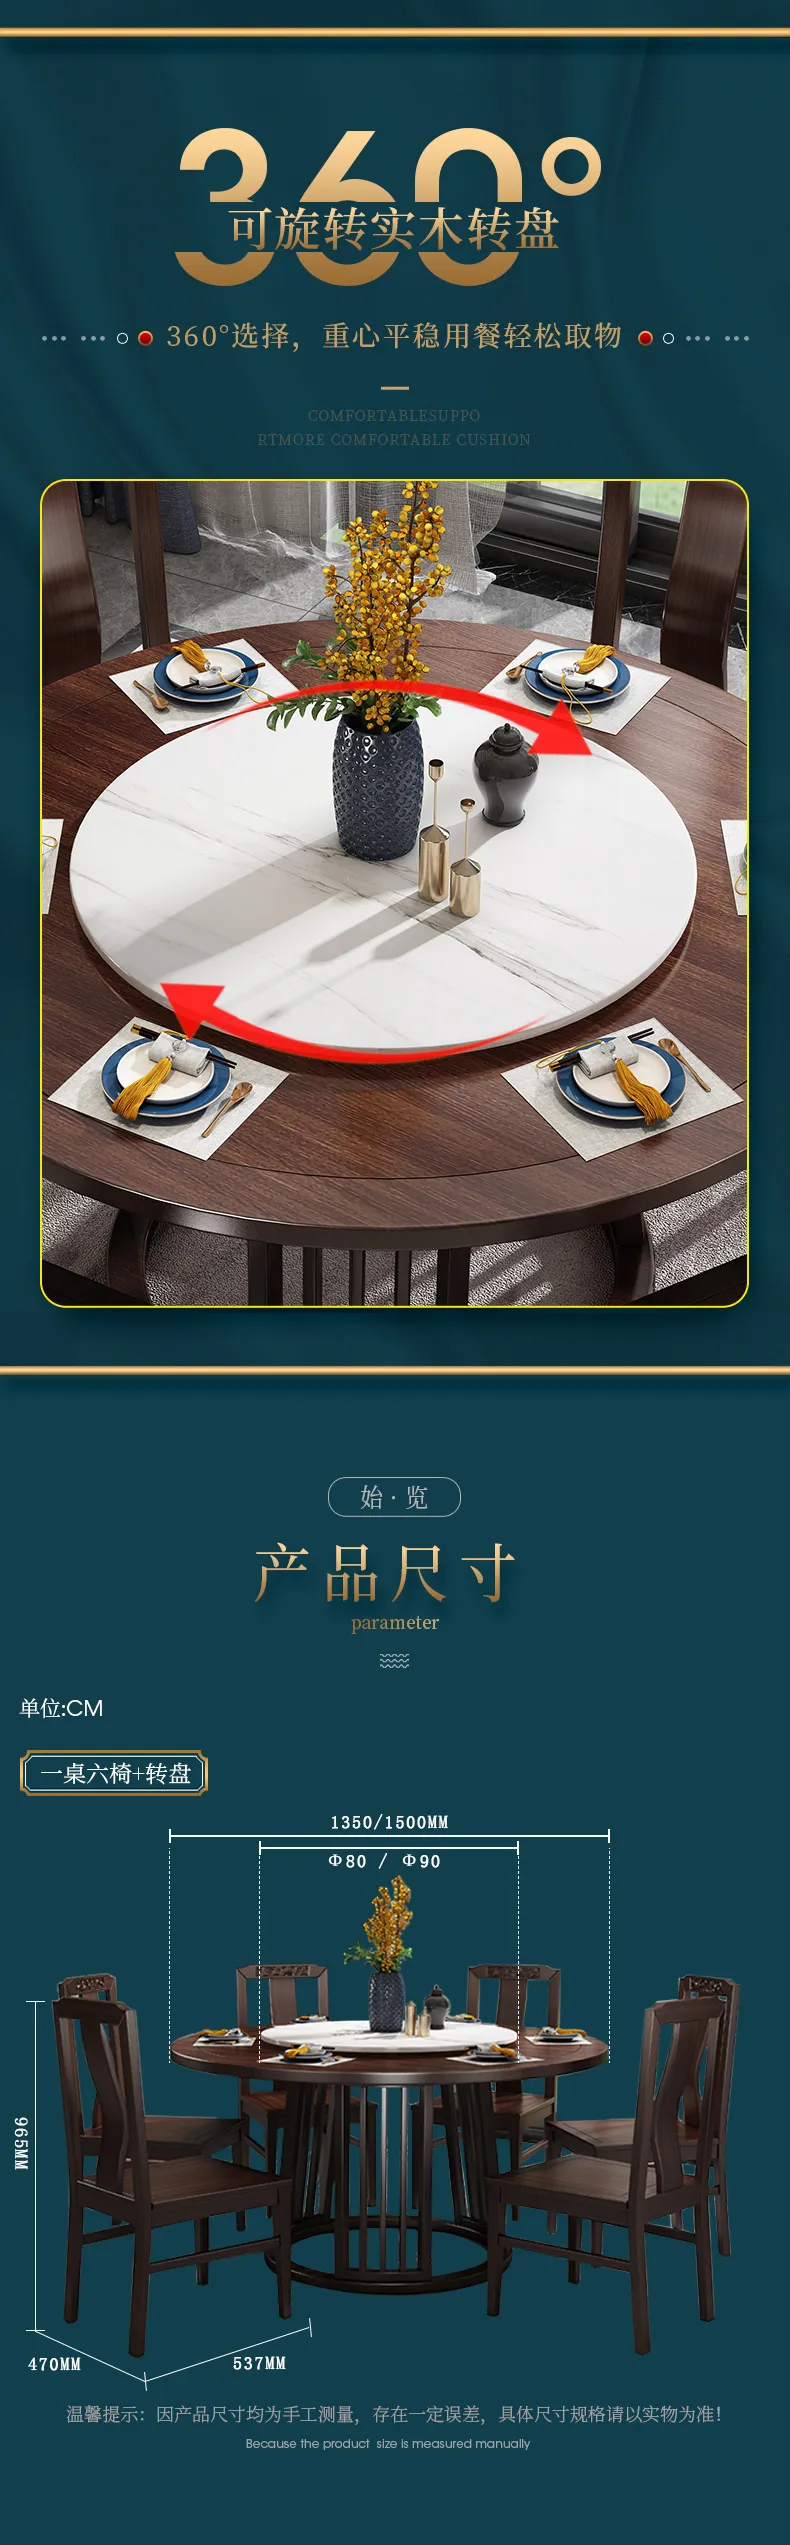 华松居 乌金木新中式实木餐桌简约家用圆桌饭桌餐桌椅 #2002(图7)